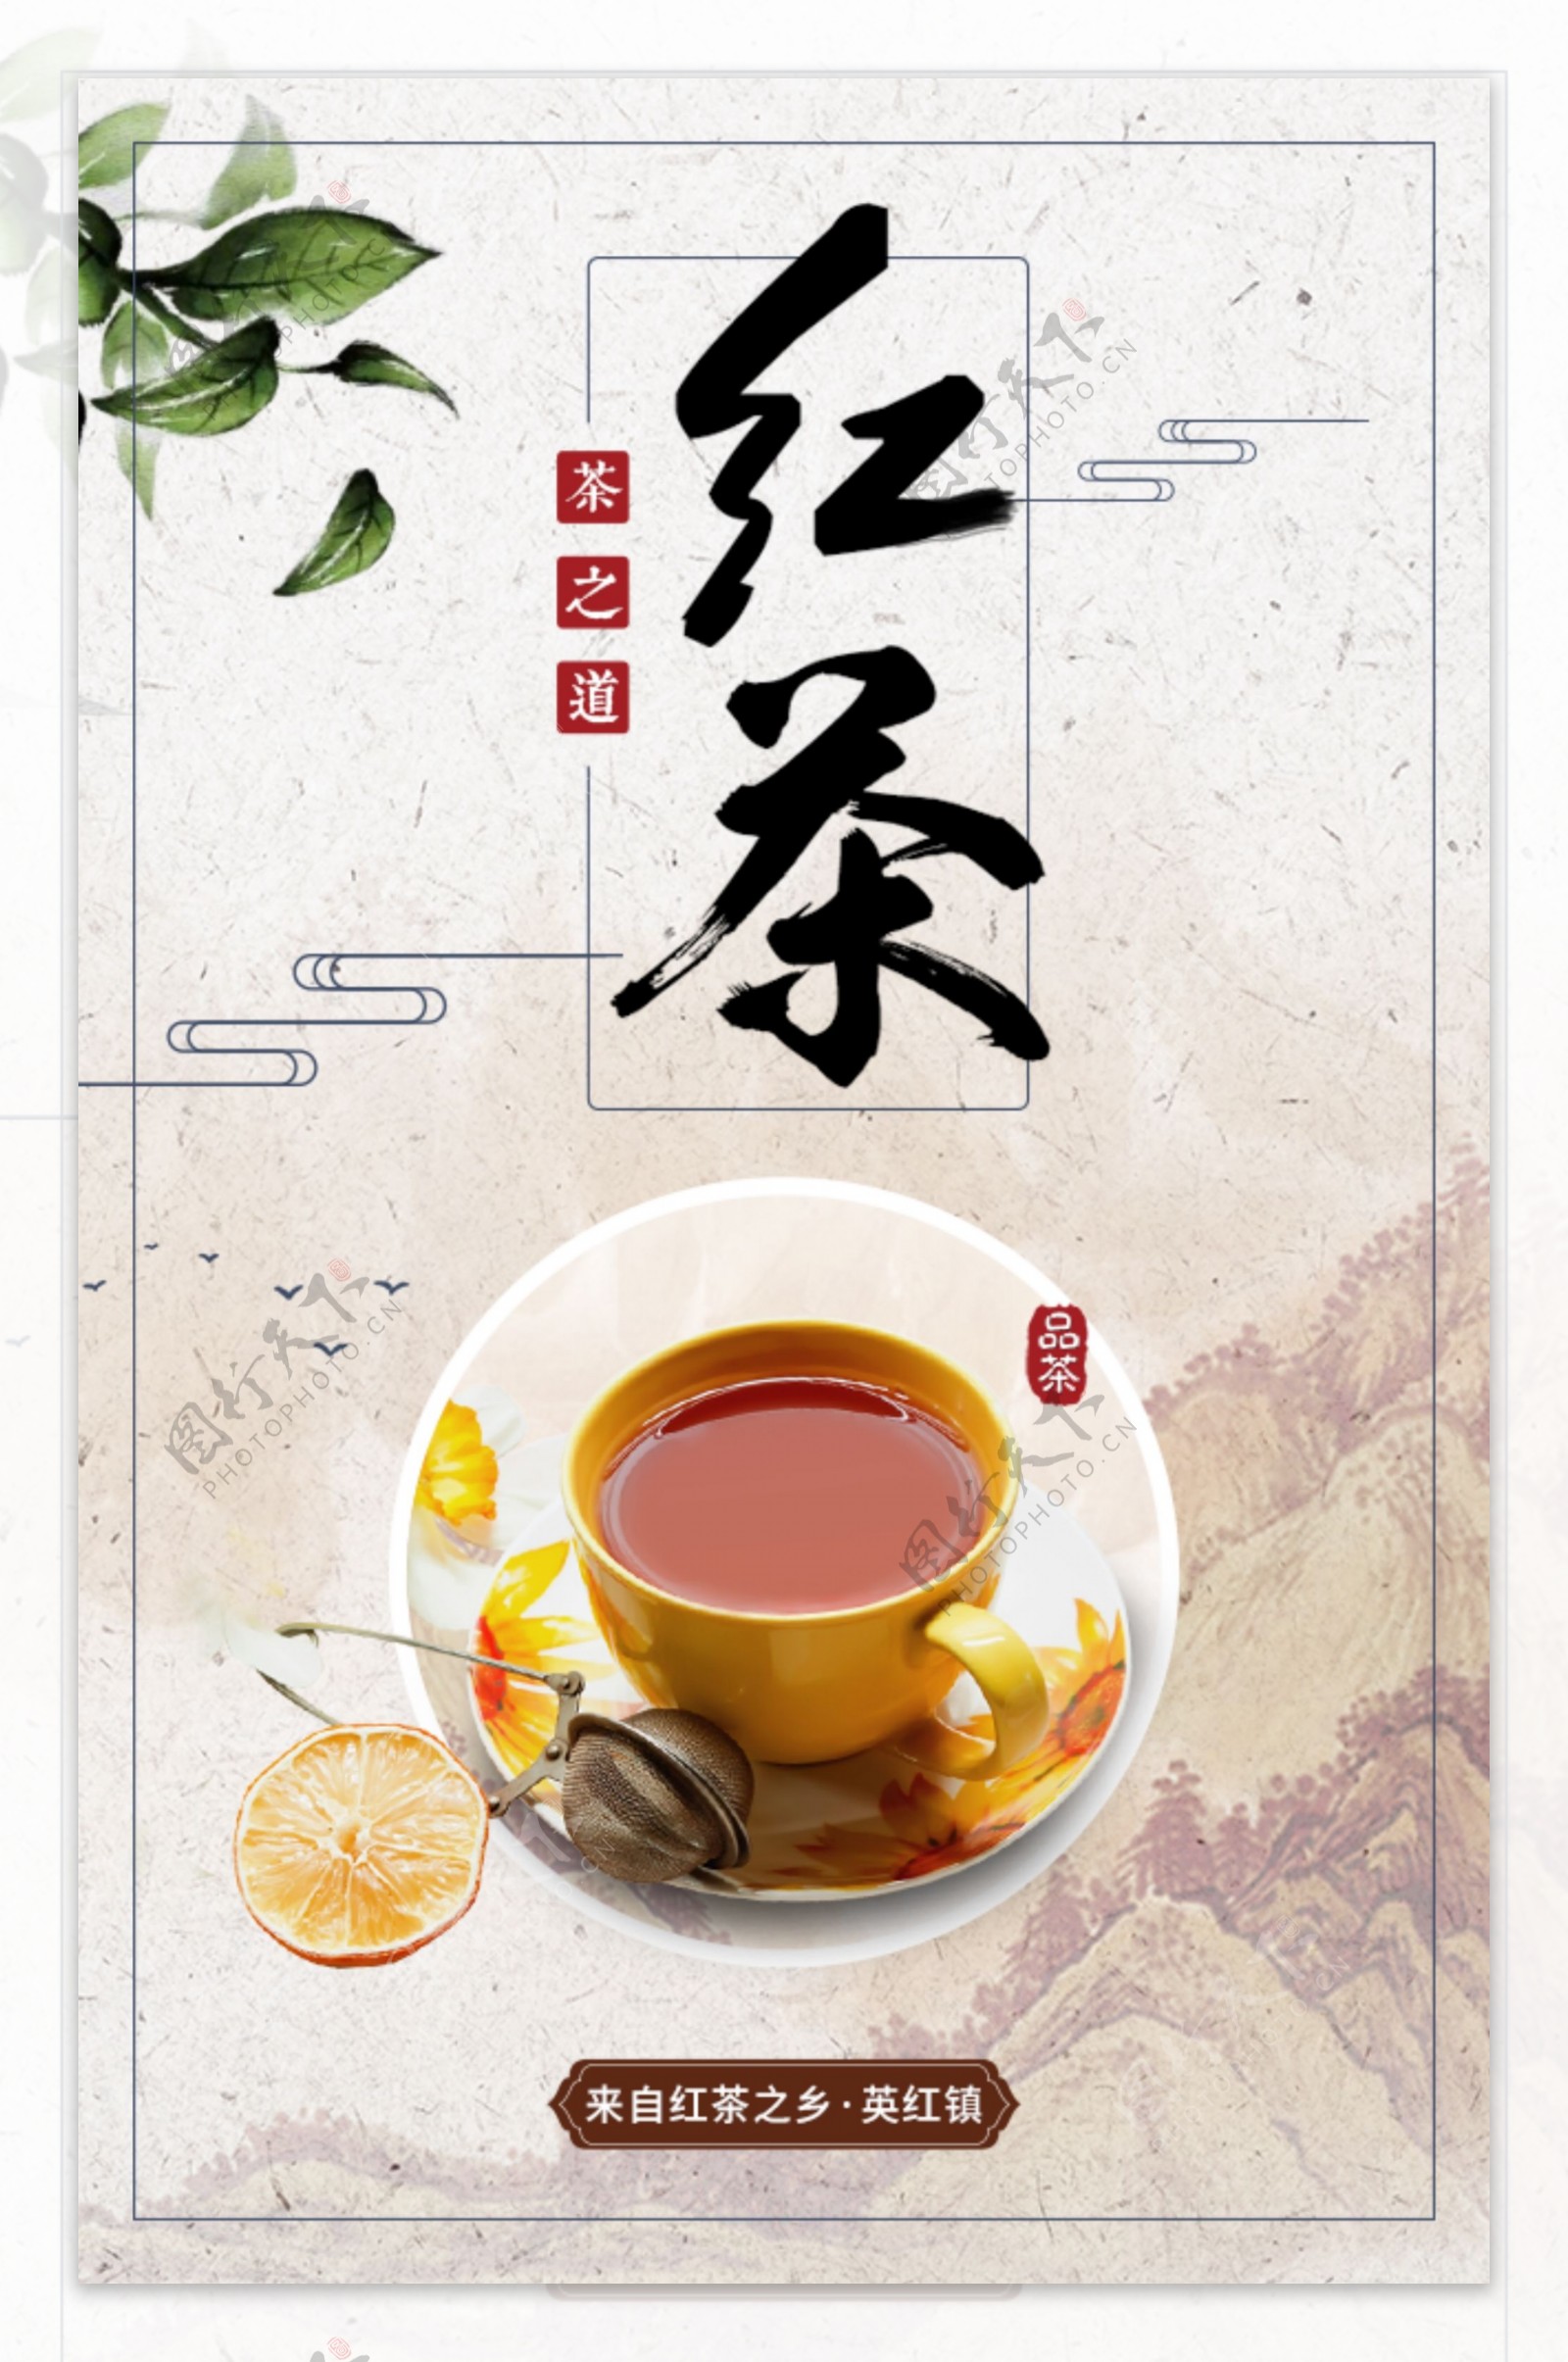 中国风红茶宣传海报